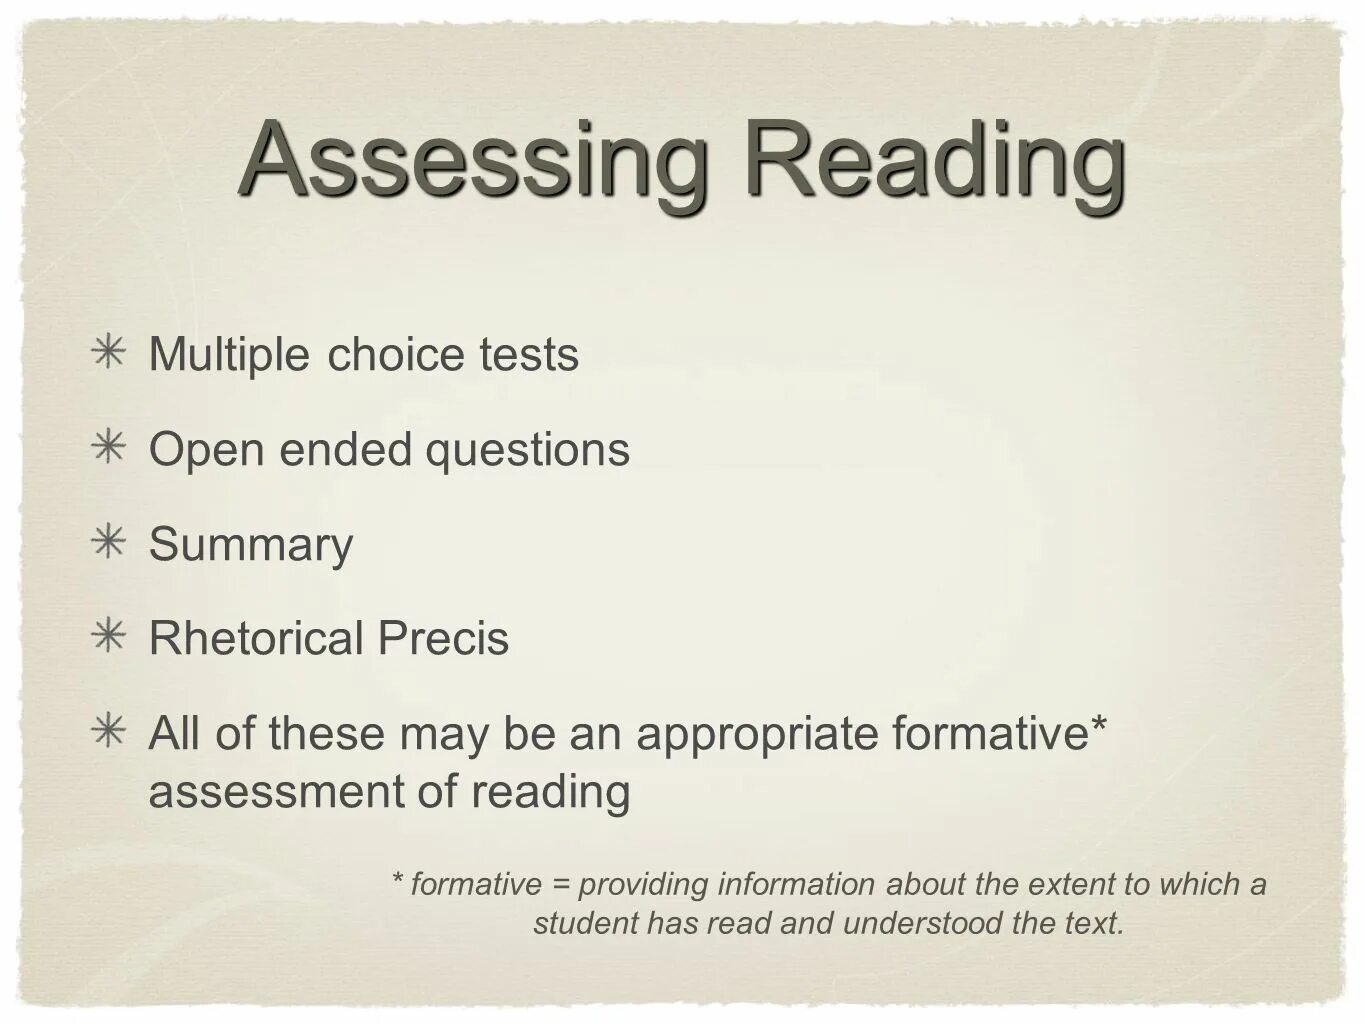 Reading Assessment Criteria. Assessment Criteria for reading. Assessing reading. Listening and reading Assessment. Assess перевод